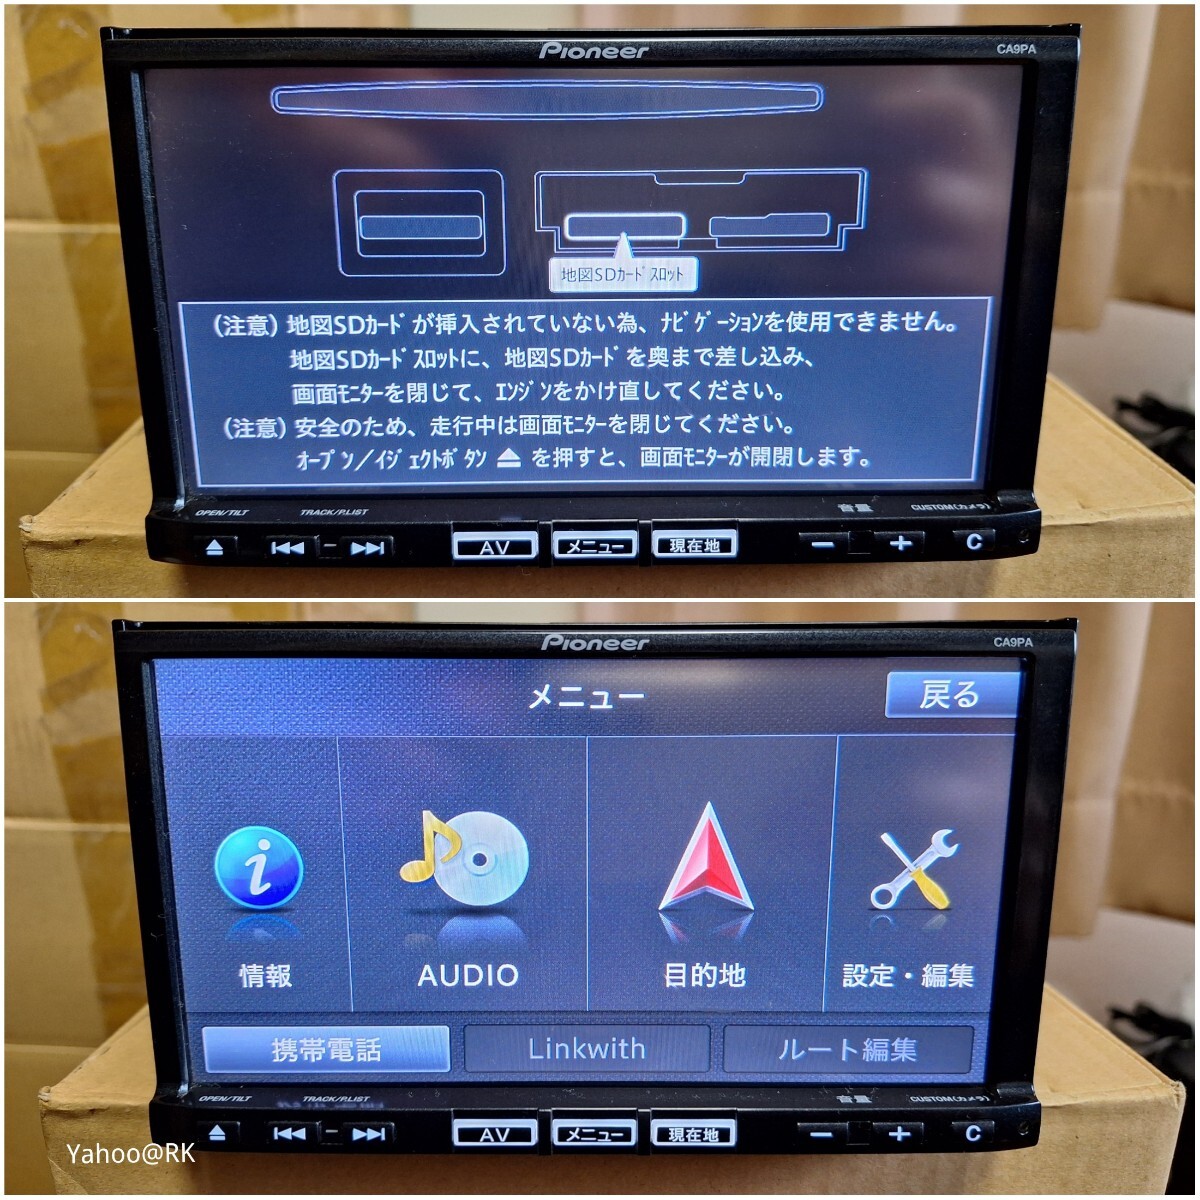 マツダ 純正ナビ 型式 C9PA Pioneer カロッツェリア DVD再生 Bluetooth テレビ フルセグ SDカード USB iPod HDMI CD録音 地図SDカードなしの画像1